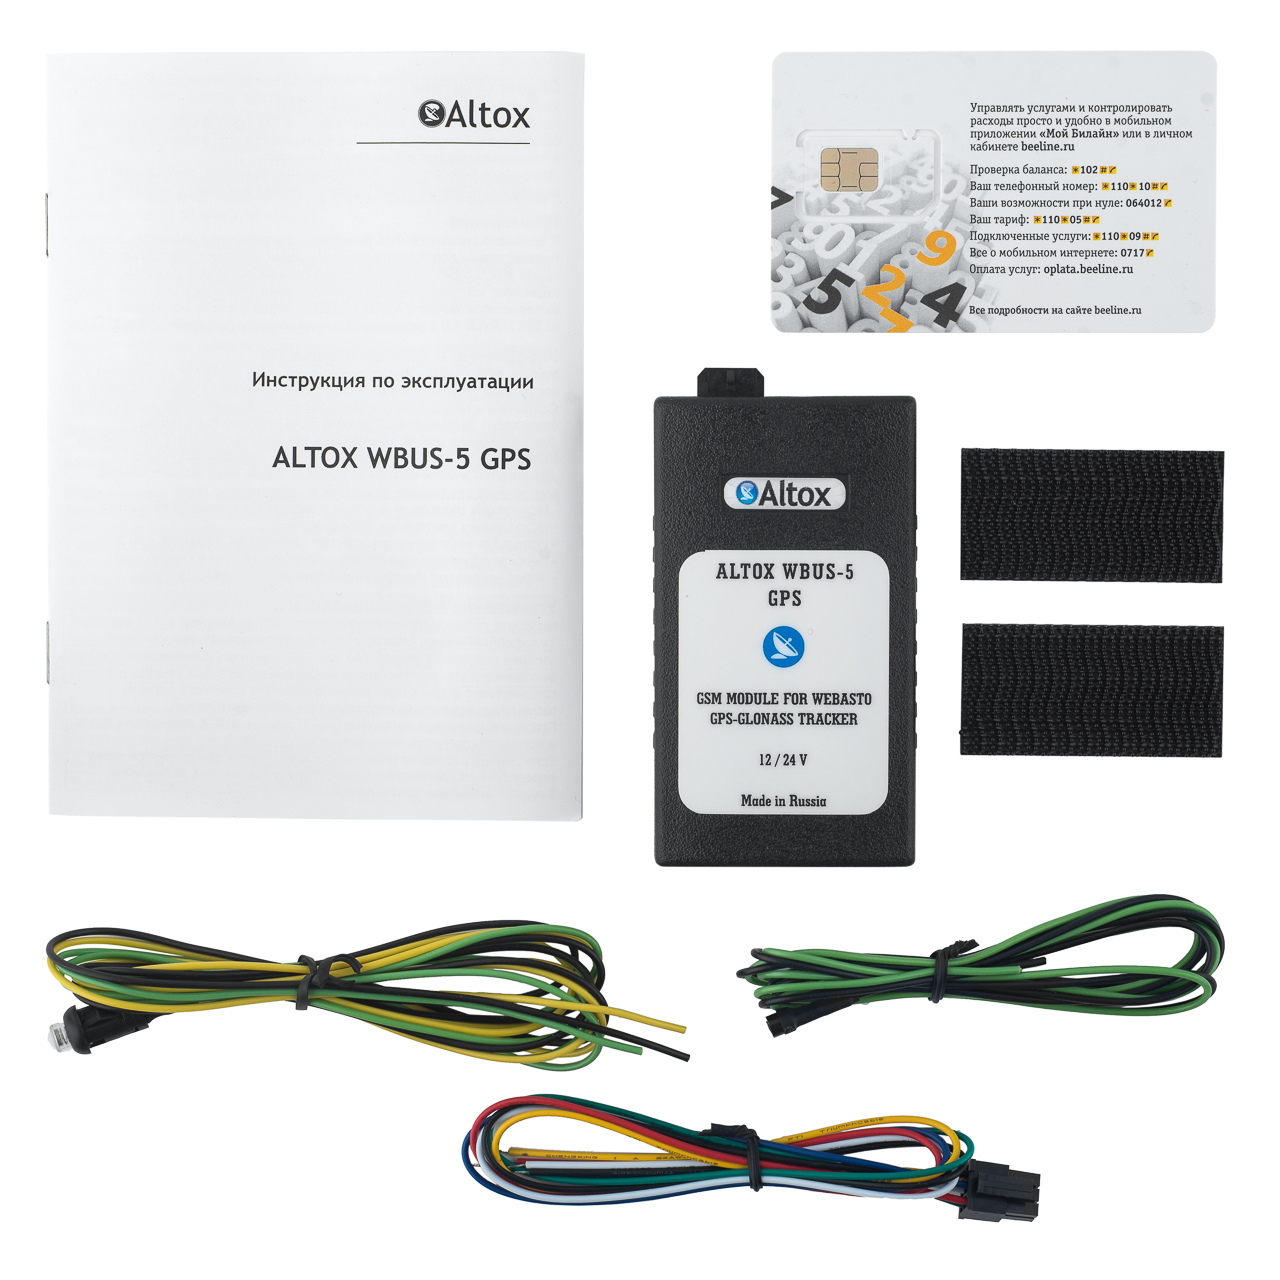 Gsm модуль инструкция. ALTOX WBUS-5 GPS. ALTOX GSM модуль. ALTOX WBUS-5 GPS схема подключения. GSM модуль для вебасто.